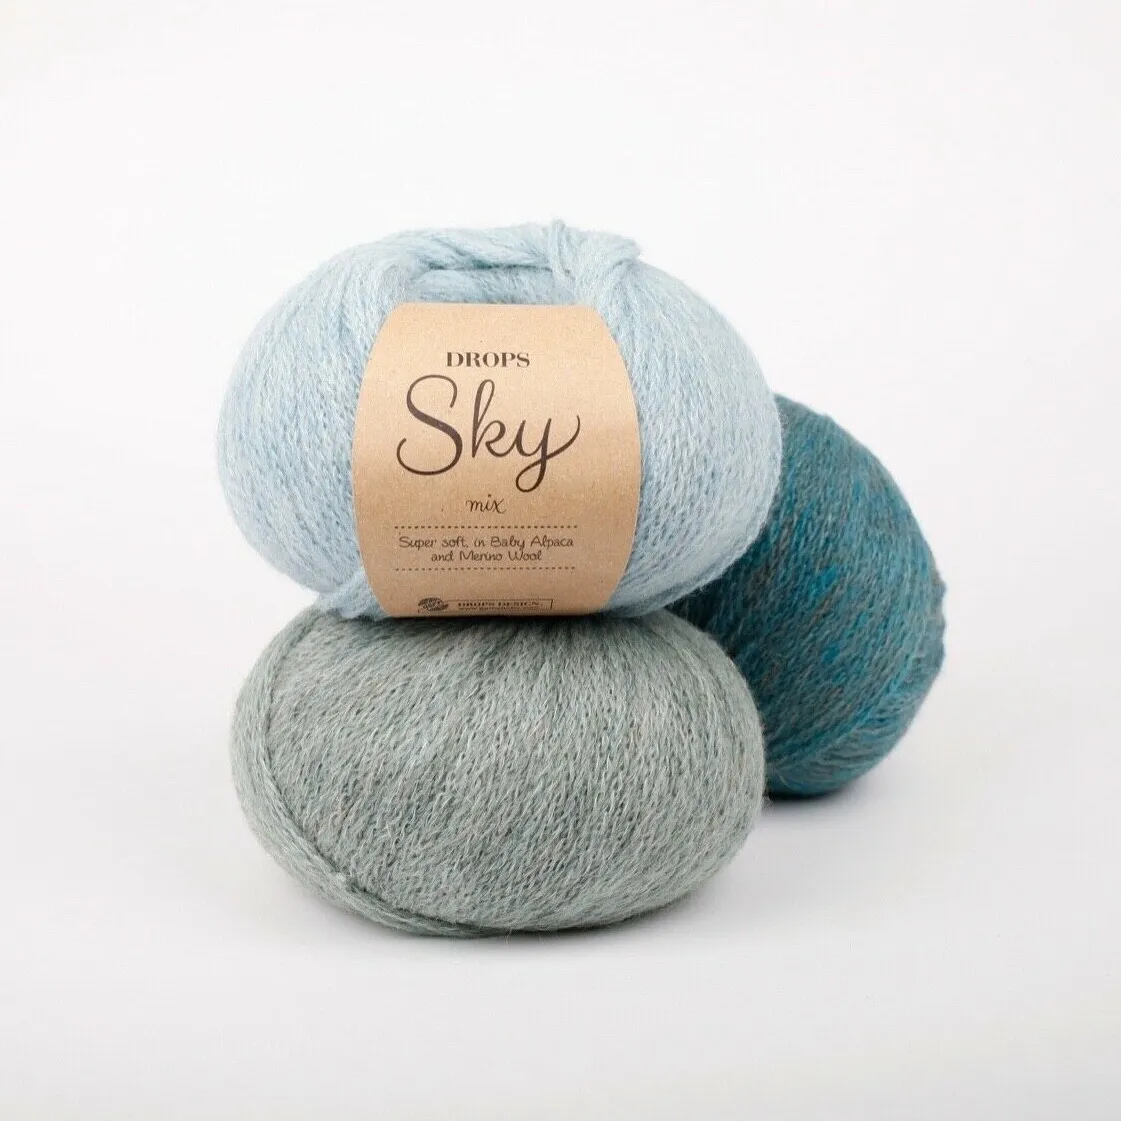 presse Dømme langsom Alpaca Merino DK yarn SOFT Light weight Crochet baby knitting wool DROPS  SKY | eBay